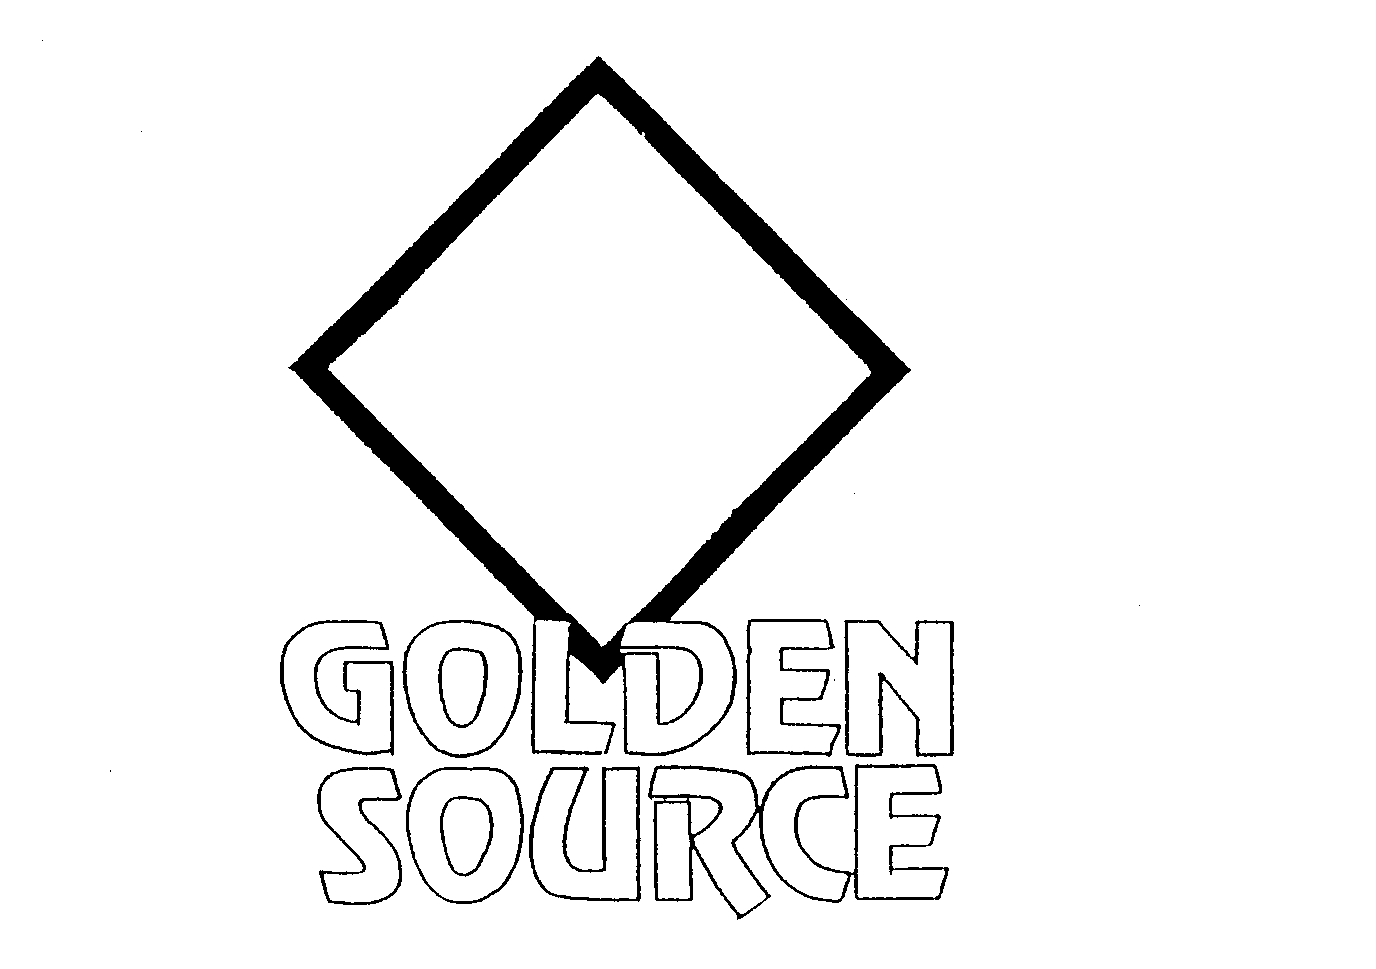 GOLDEN SOURCE